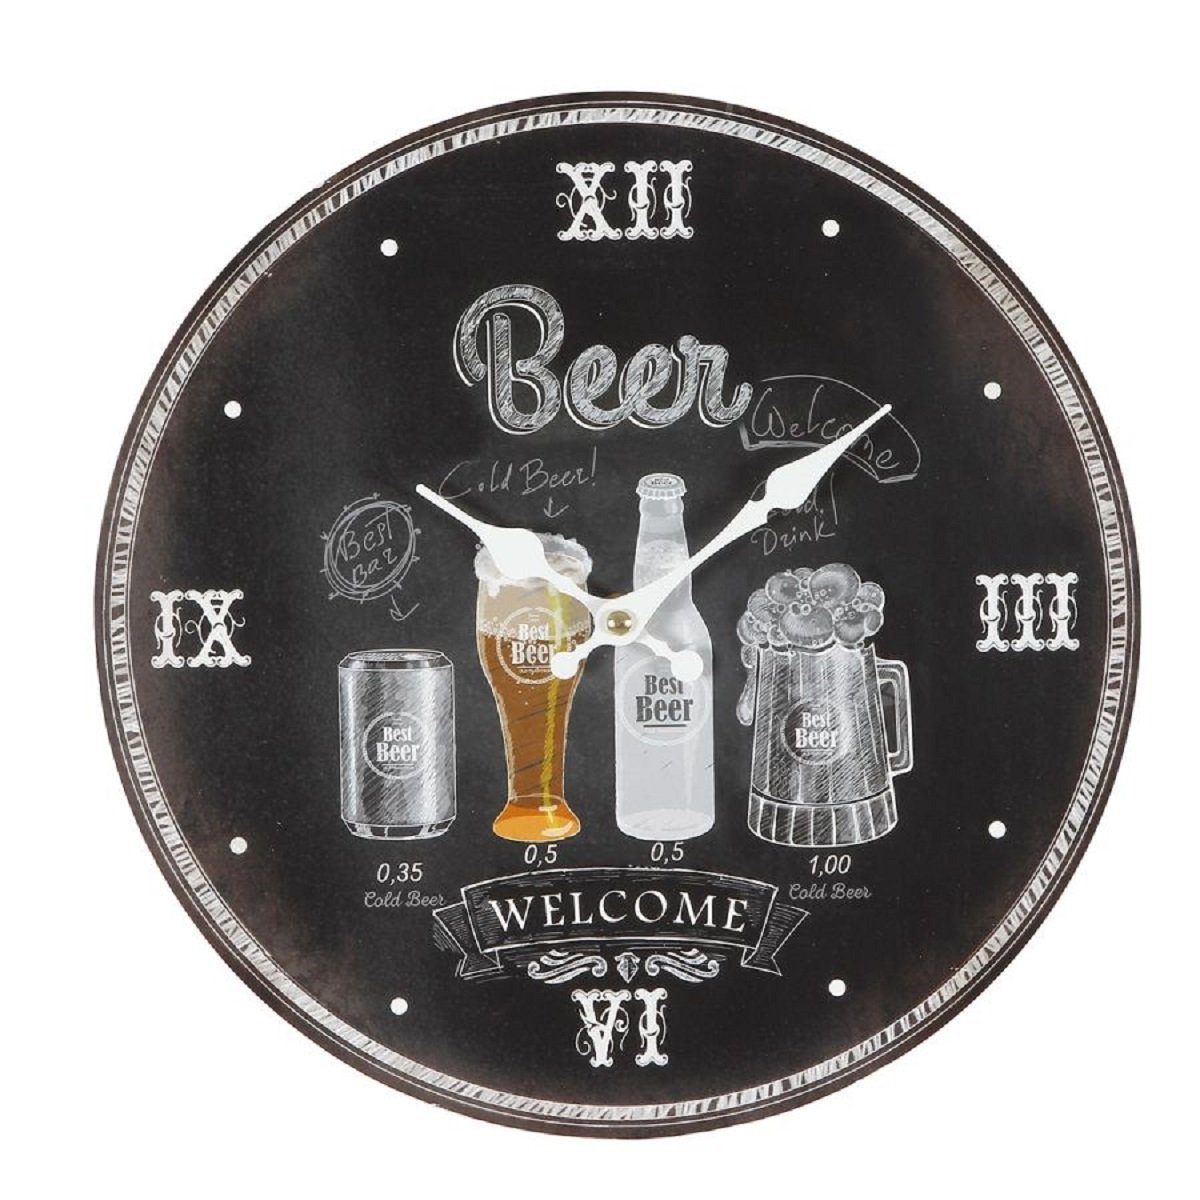 Linoows Uhr Wanduhr mit Bier Motiven, Welcome Partyraum Uhr (Kneipen Uhr mit Bierflaschen, Humpen und Gläser Motiven, Partyraum Uhr)